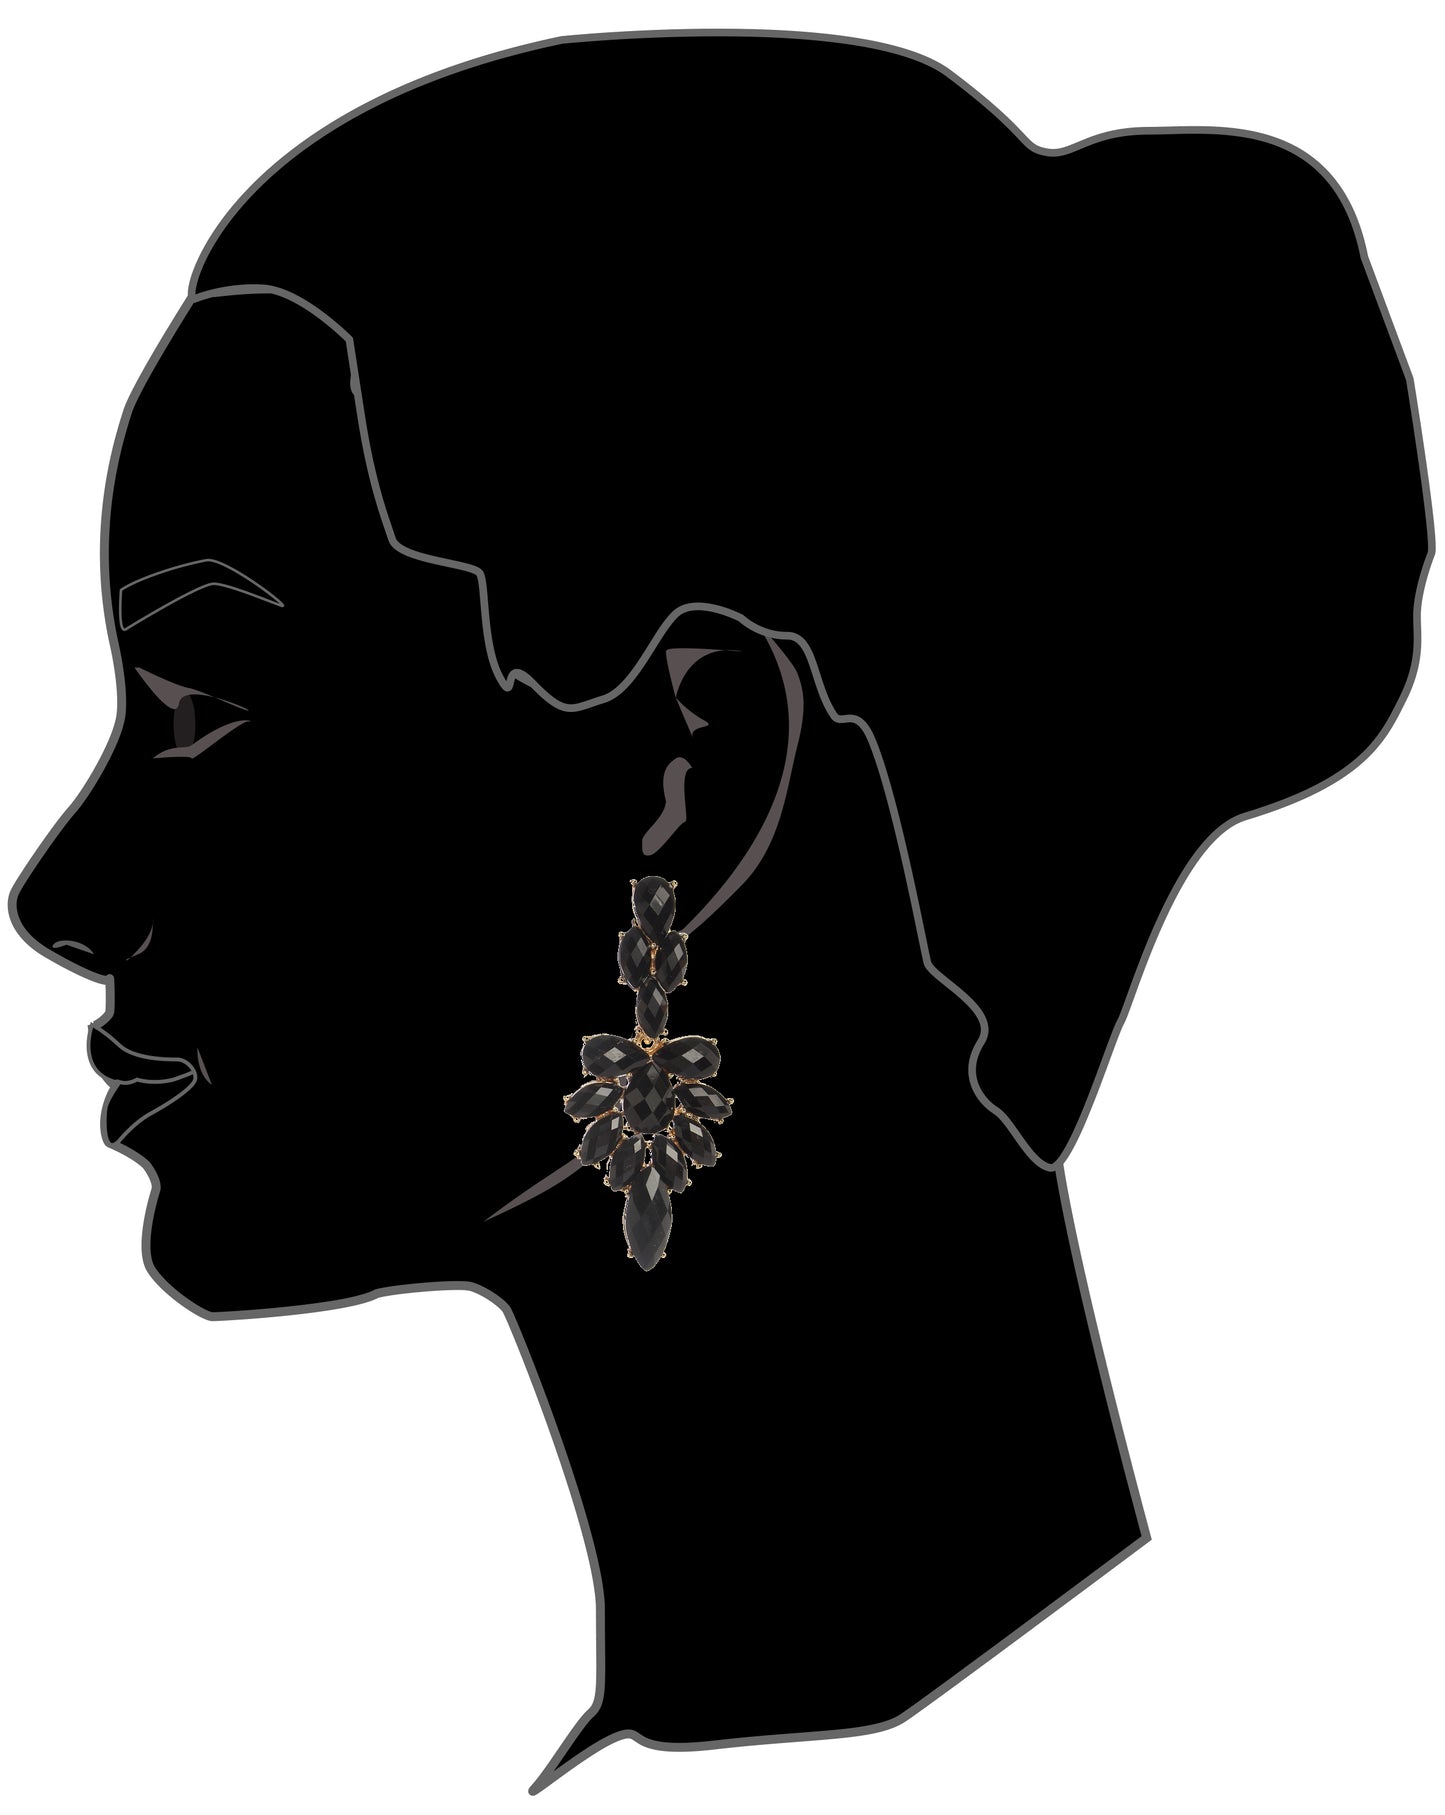 AMRITA NEW YORK Colette Dangle Earrings Lapis